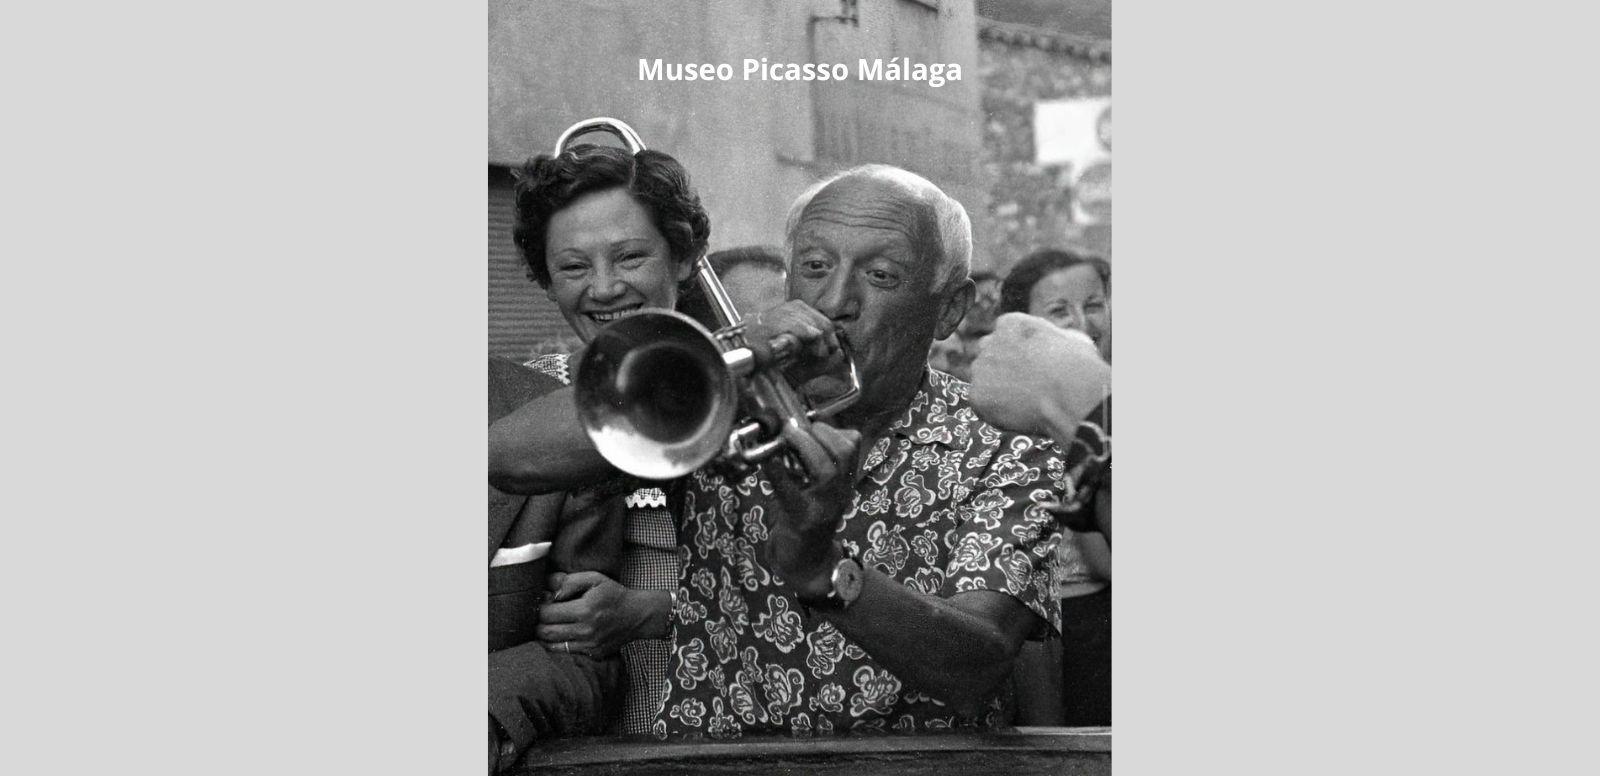 ¿Por qué es importante celebrar a Picasso? Museo Picasso Málaga